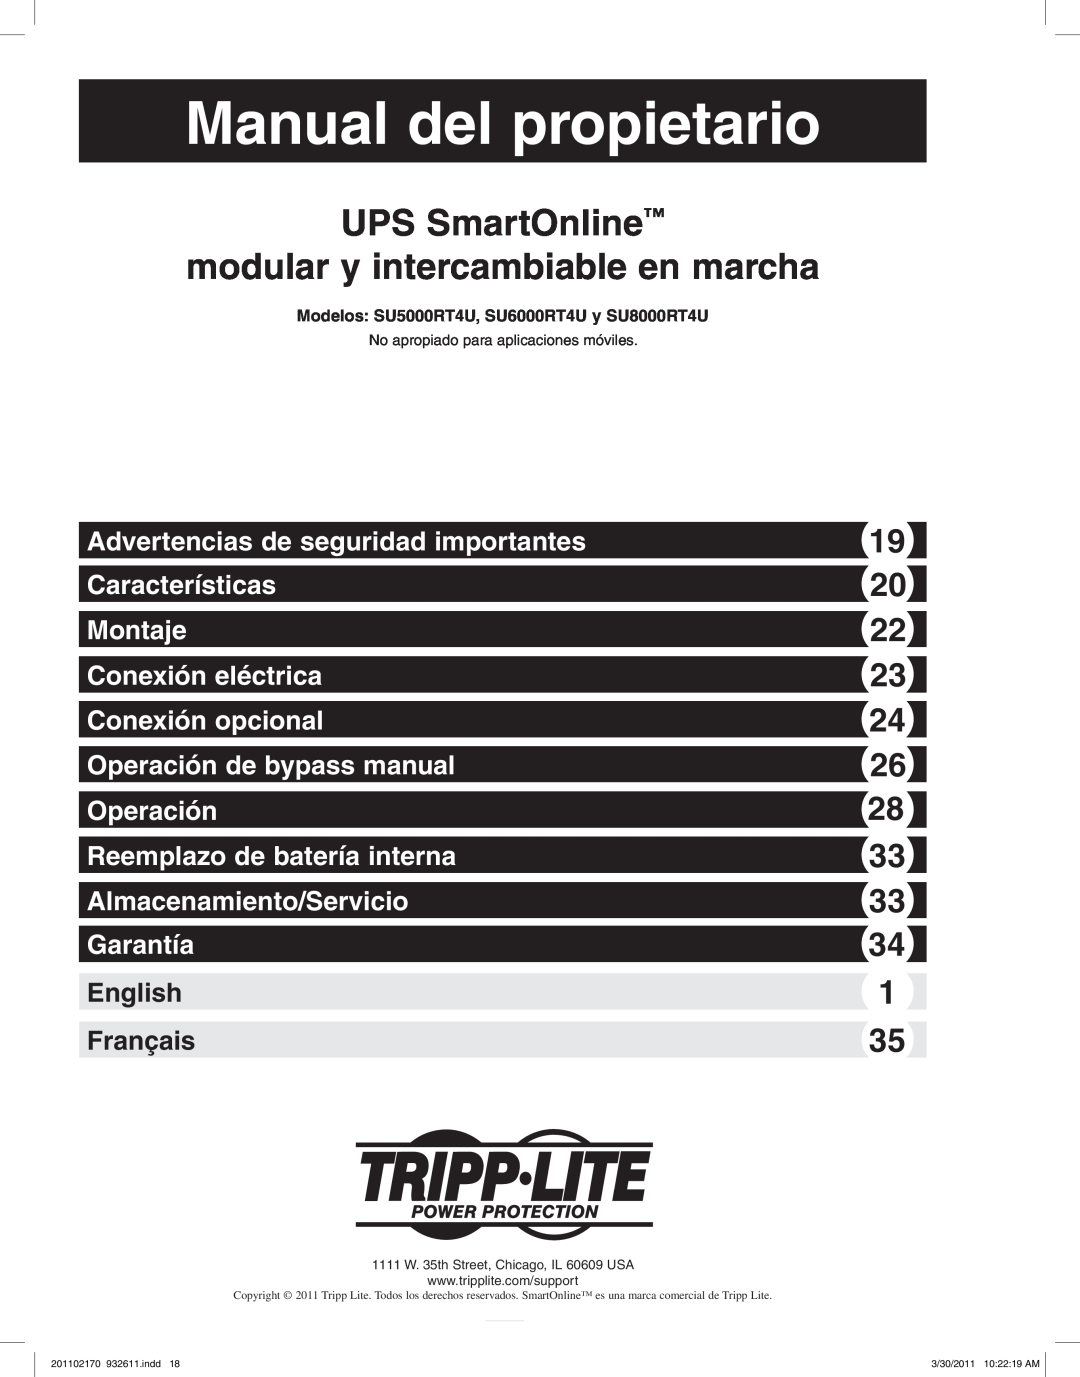 Tripp Lite SU8000RT4U, SU6000RT4U Manual del propietario, UPS SmartOnline modular y intercambiable en marcha, Garantía 